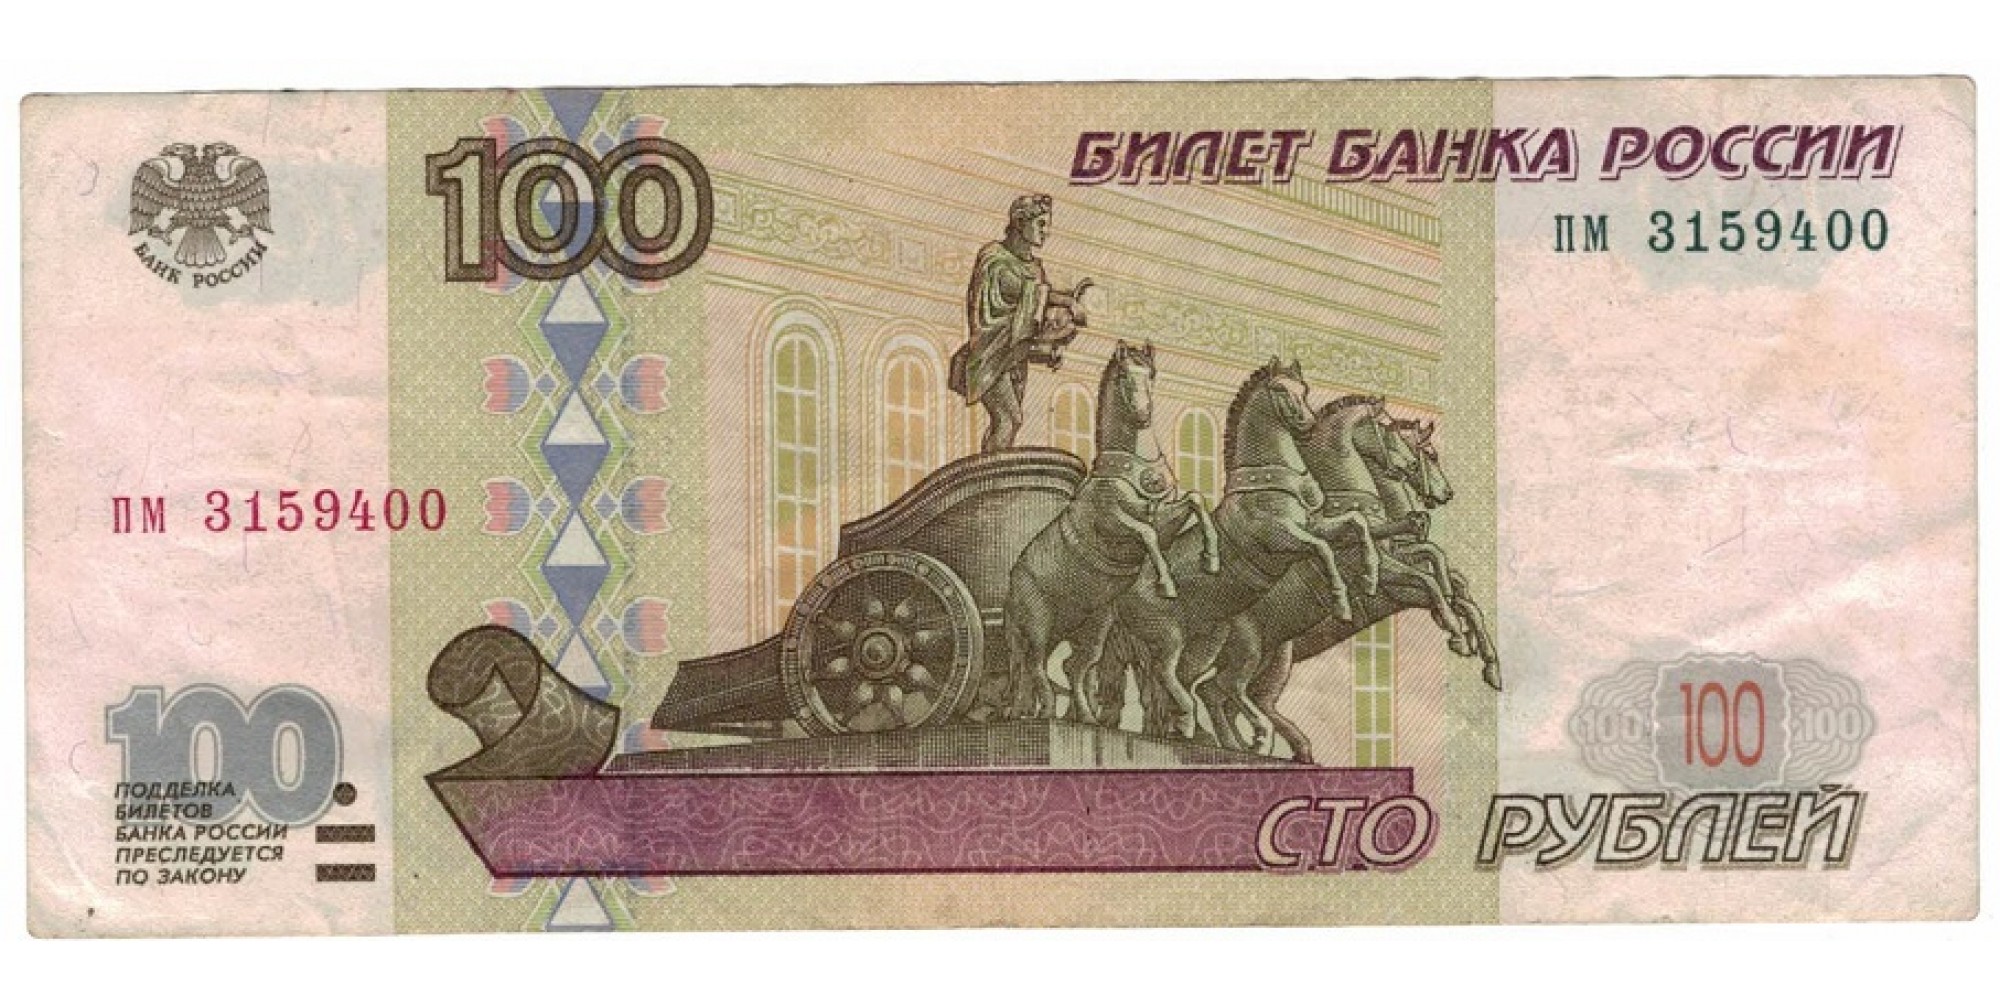 Россия 100 рублей 1997 год без модификации серия пм 3159400